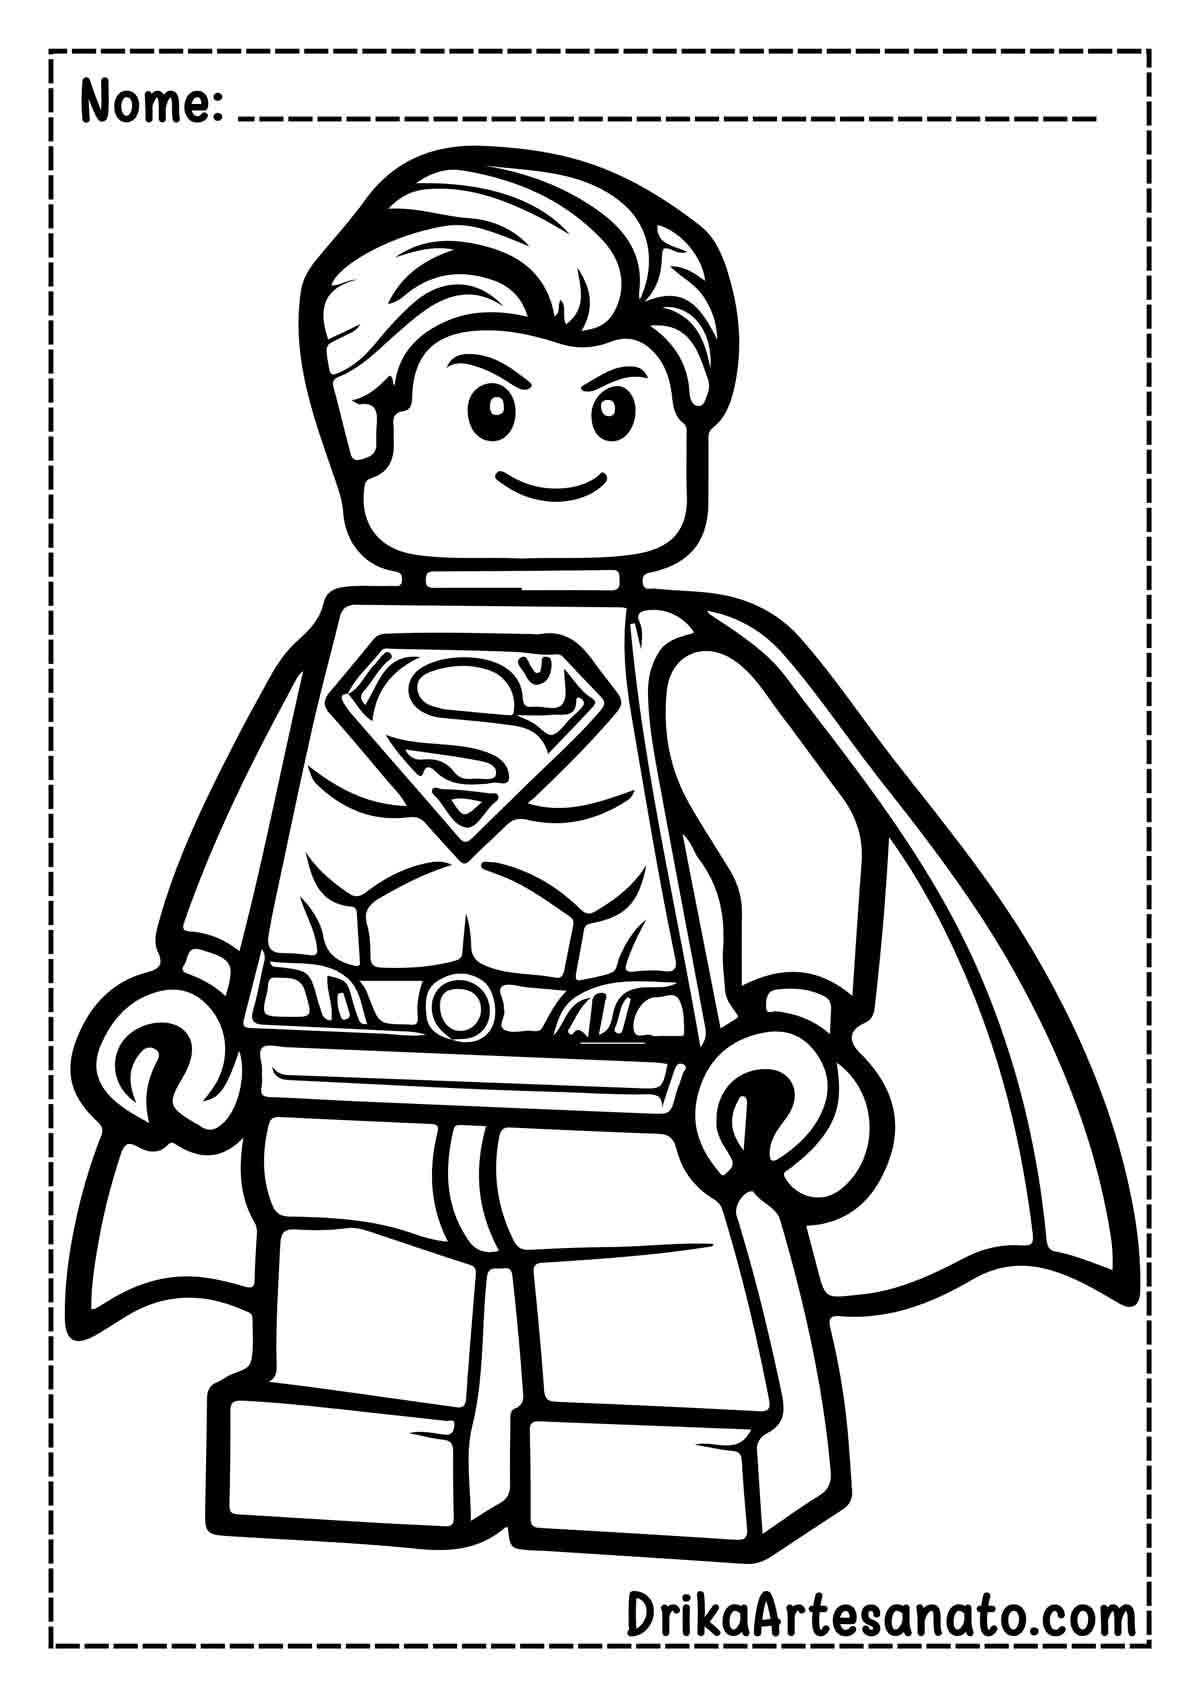 Desenho do Superman Lego para Colorir e Imprimir